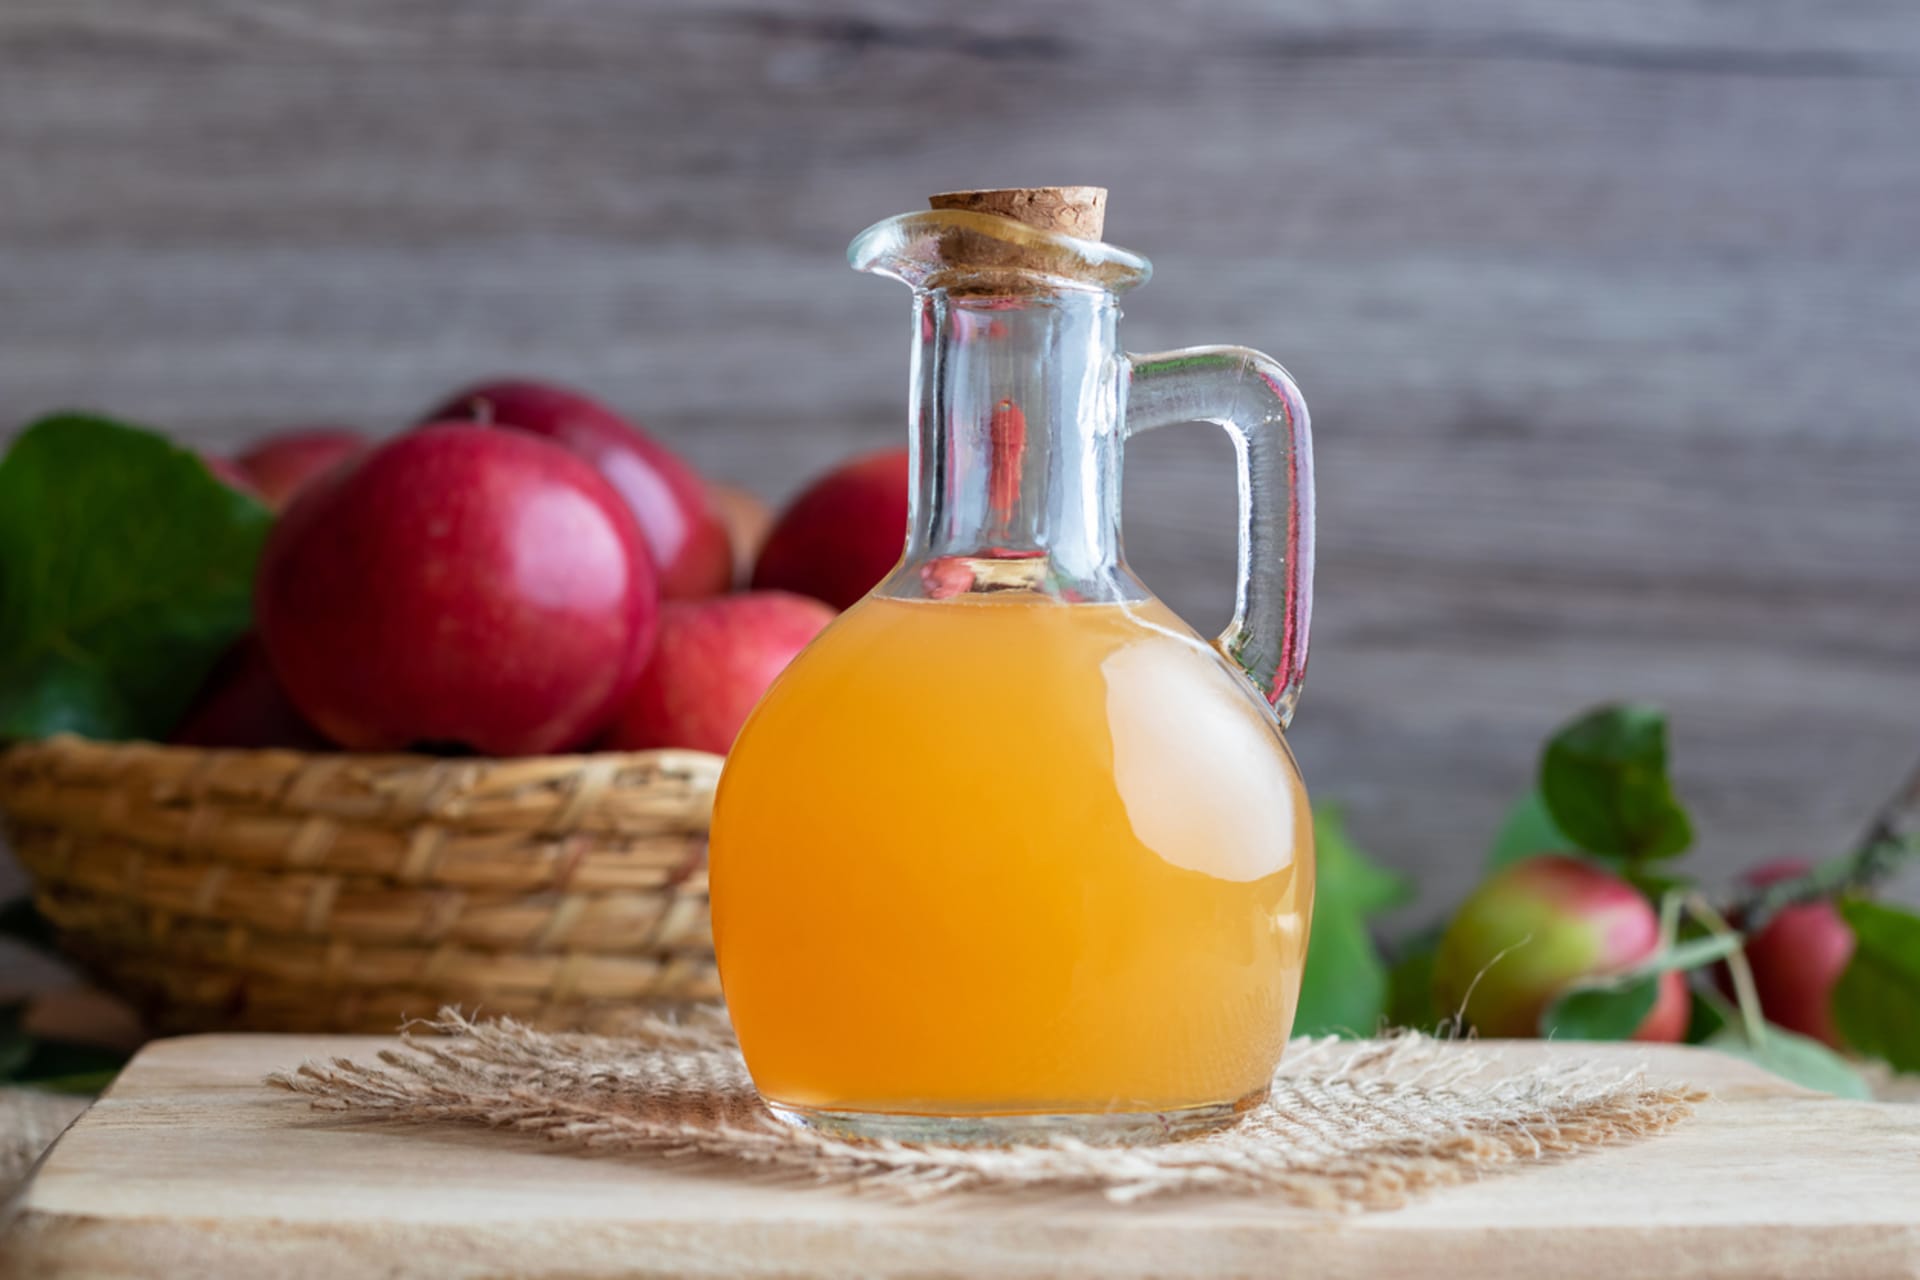 Nefiltrovaný jablečný ocet můžete vyrobit doma z odřezků a slupek